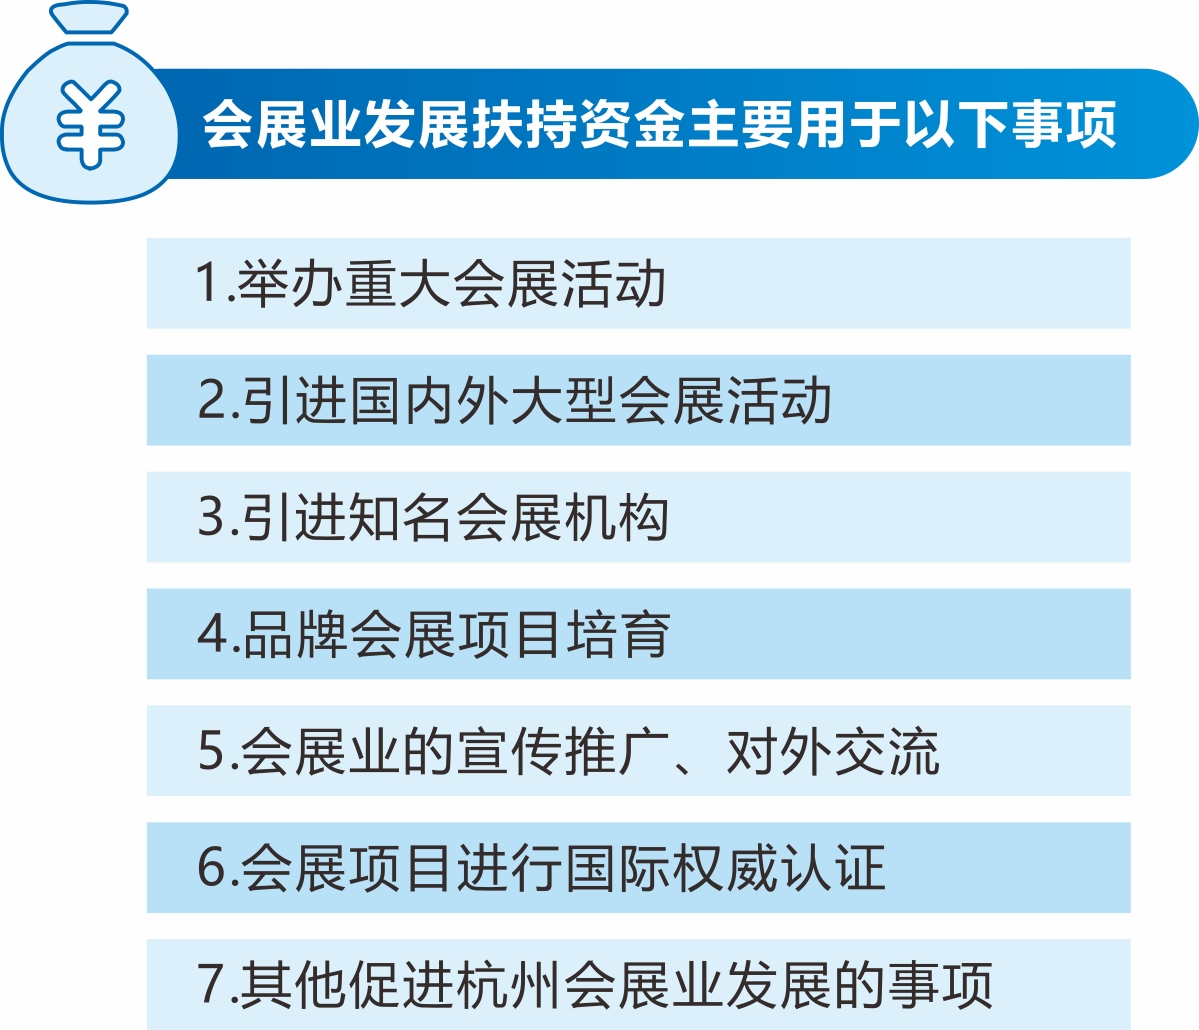 《杭州市会展业发展扶持政策实施办法》解读